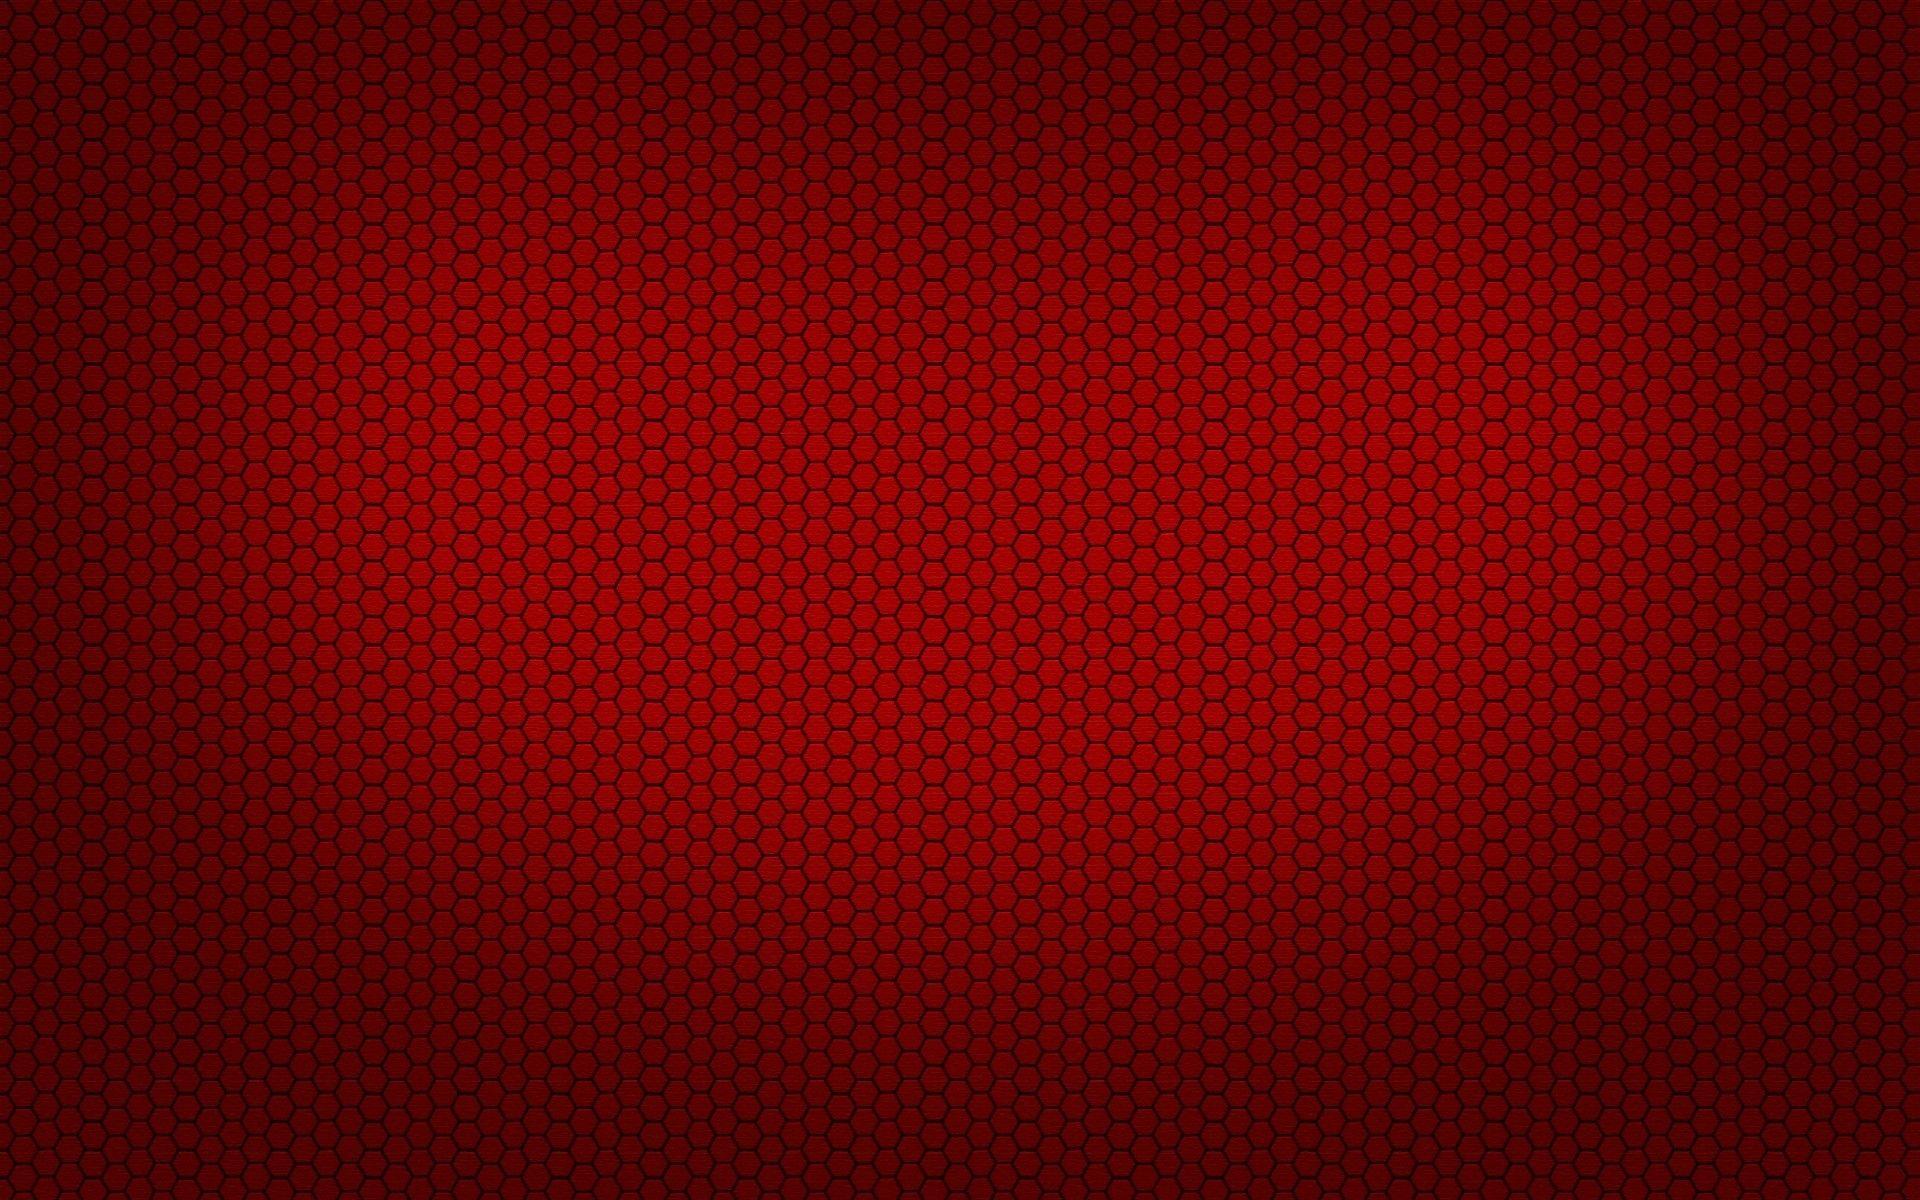 Dark Red backgroundDownload free background for desktop